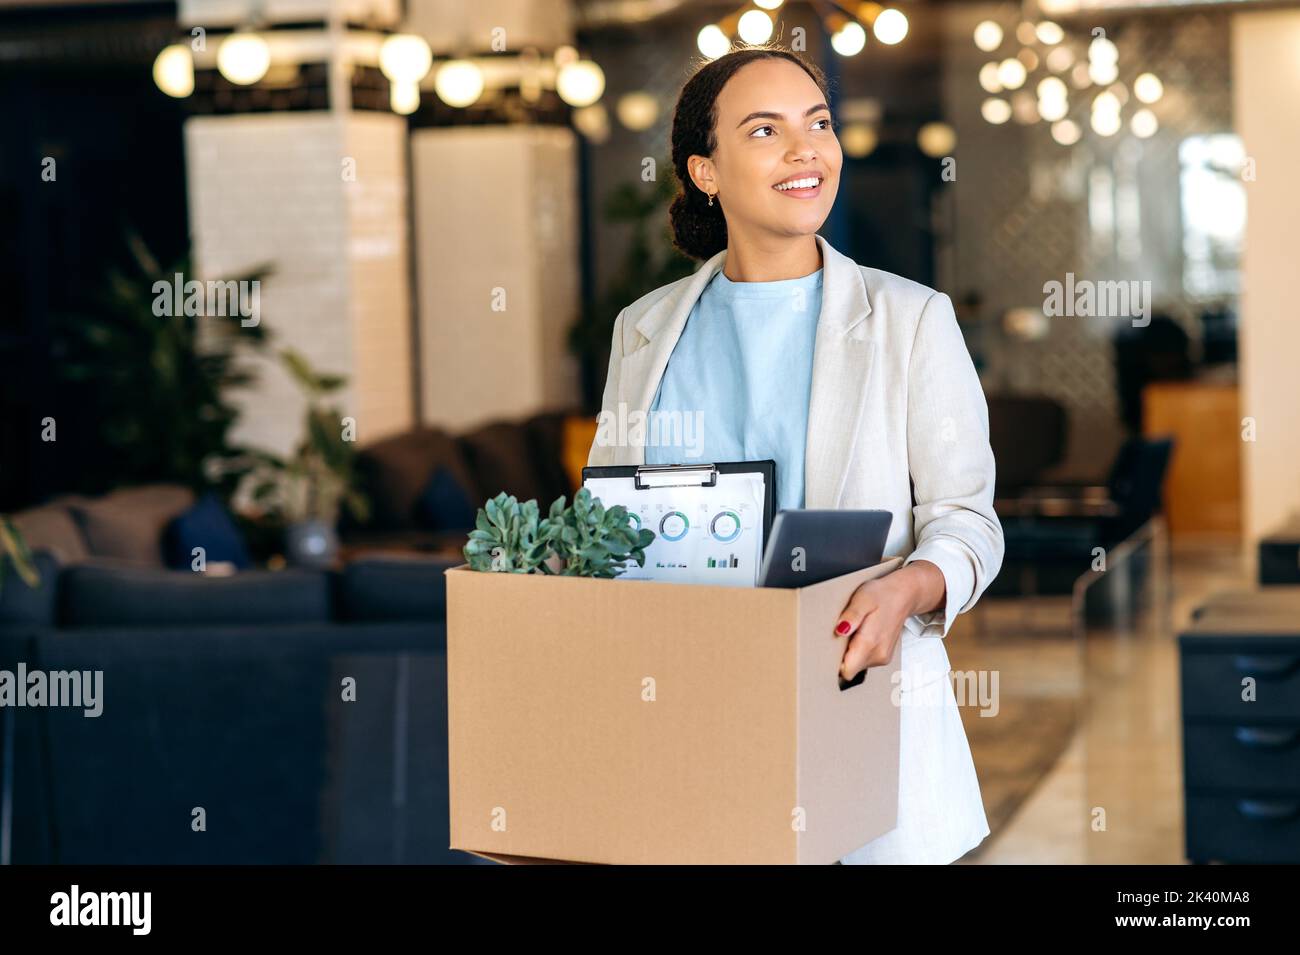 Nouveau travail. Excitée et motivée, femme de course mixte, entre dans un nouveau bureau de travail, tenant une boîte en carton avec des attributs de travail entre ses mains, inspecte l'espace de travail avec étonnement, souriant heureux Banque D'Images